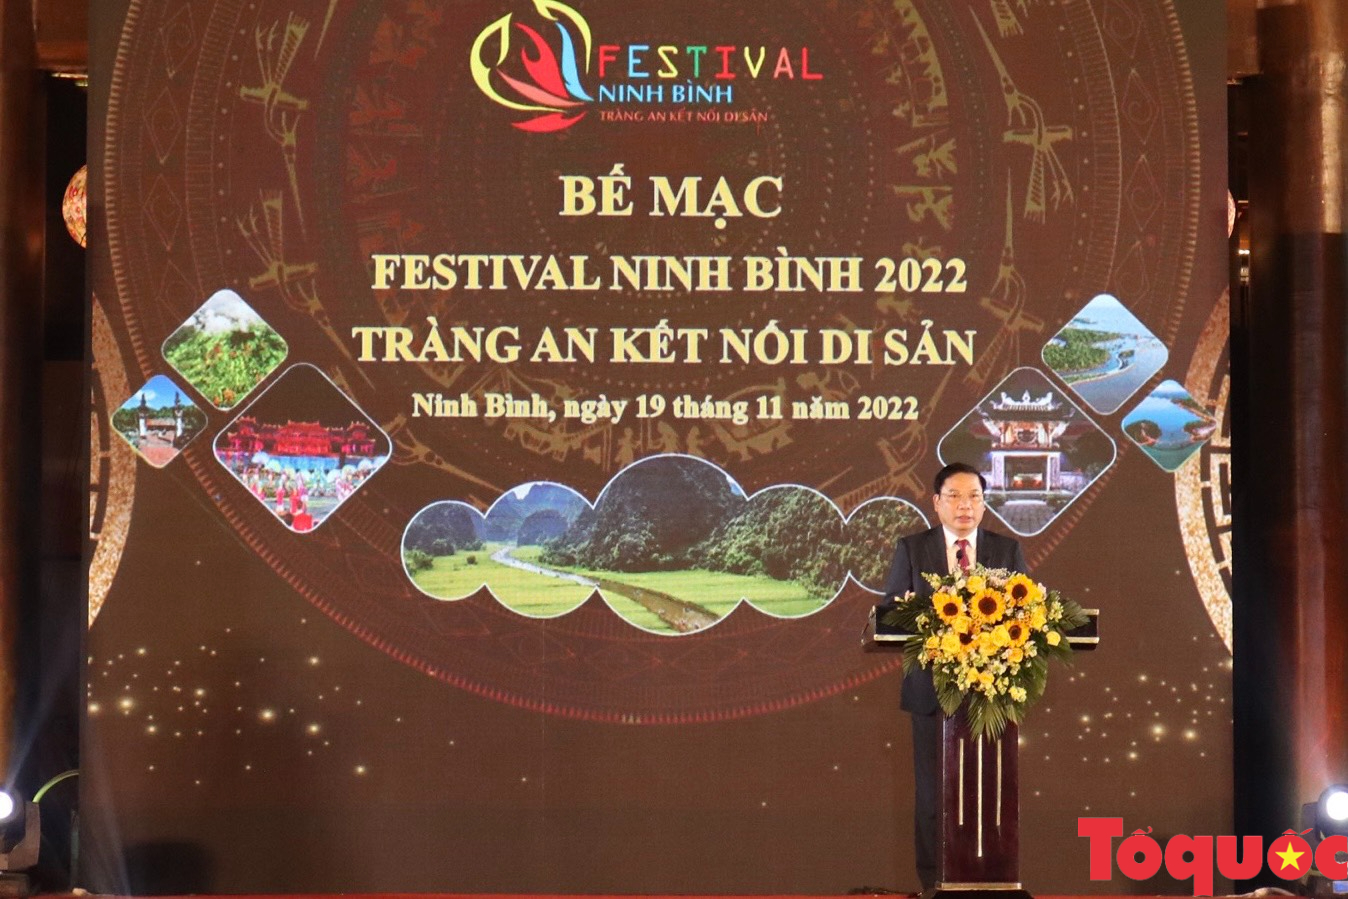 Bữa tiệc nghệ thuật khép lại tuần lễ Festival Ninh Bình năm 2022 - Ảnh 2.